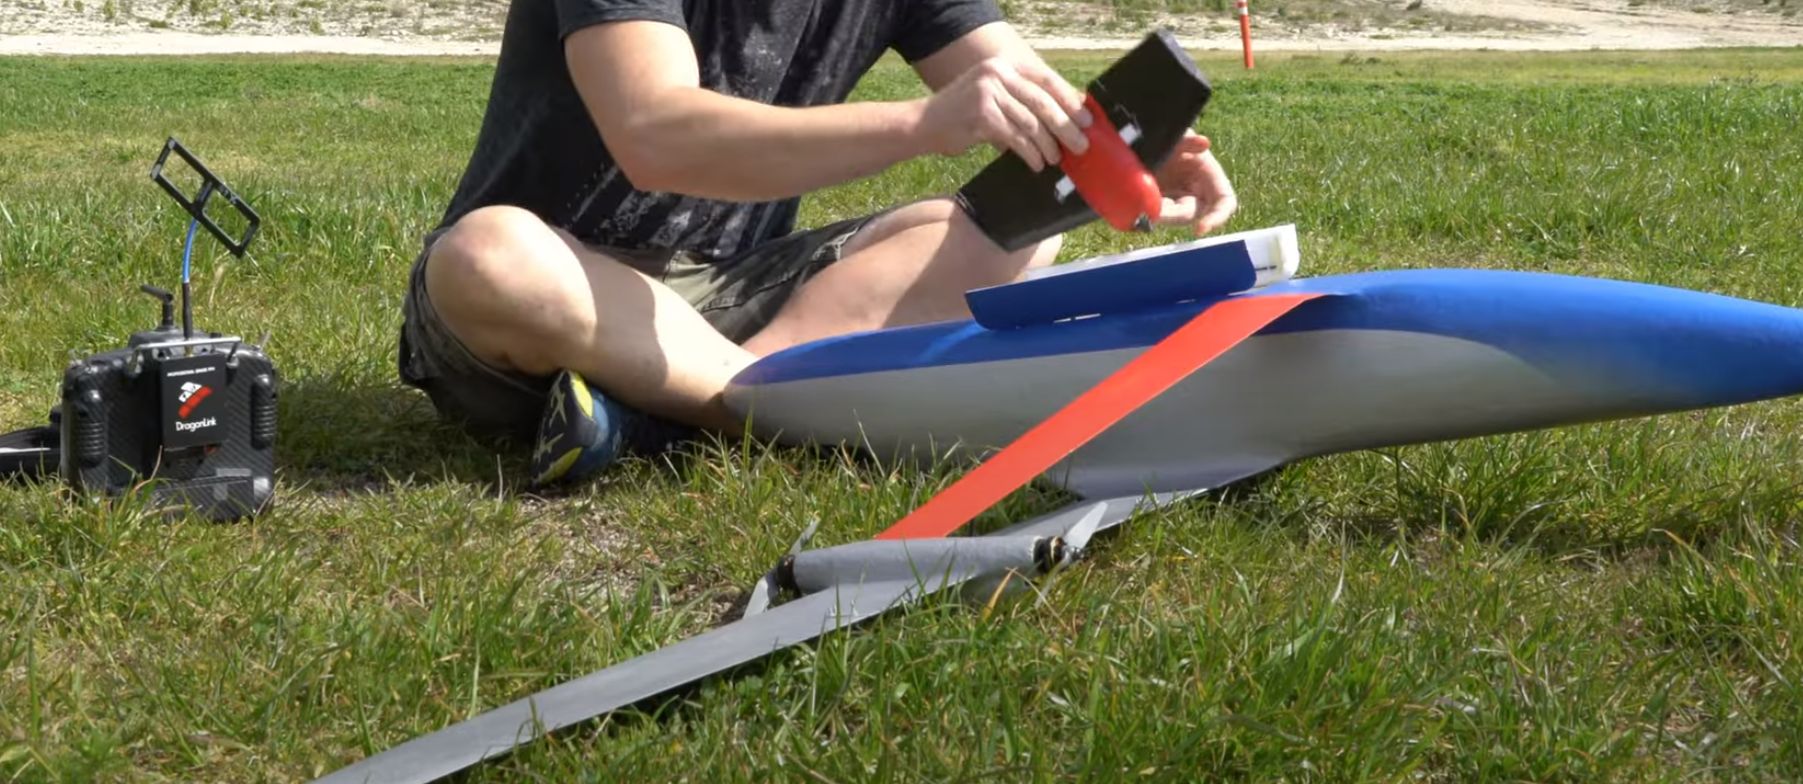 Een modelvliegtuig bouwen met een veerpoot: zin of onzin?